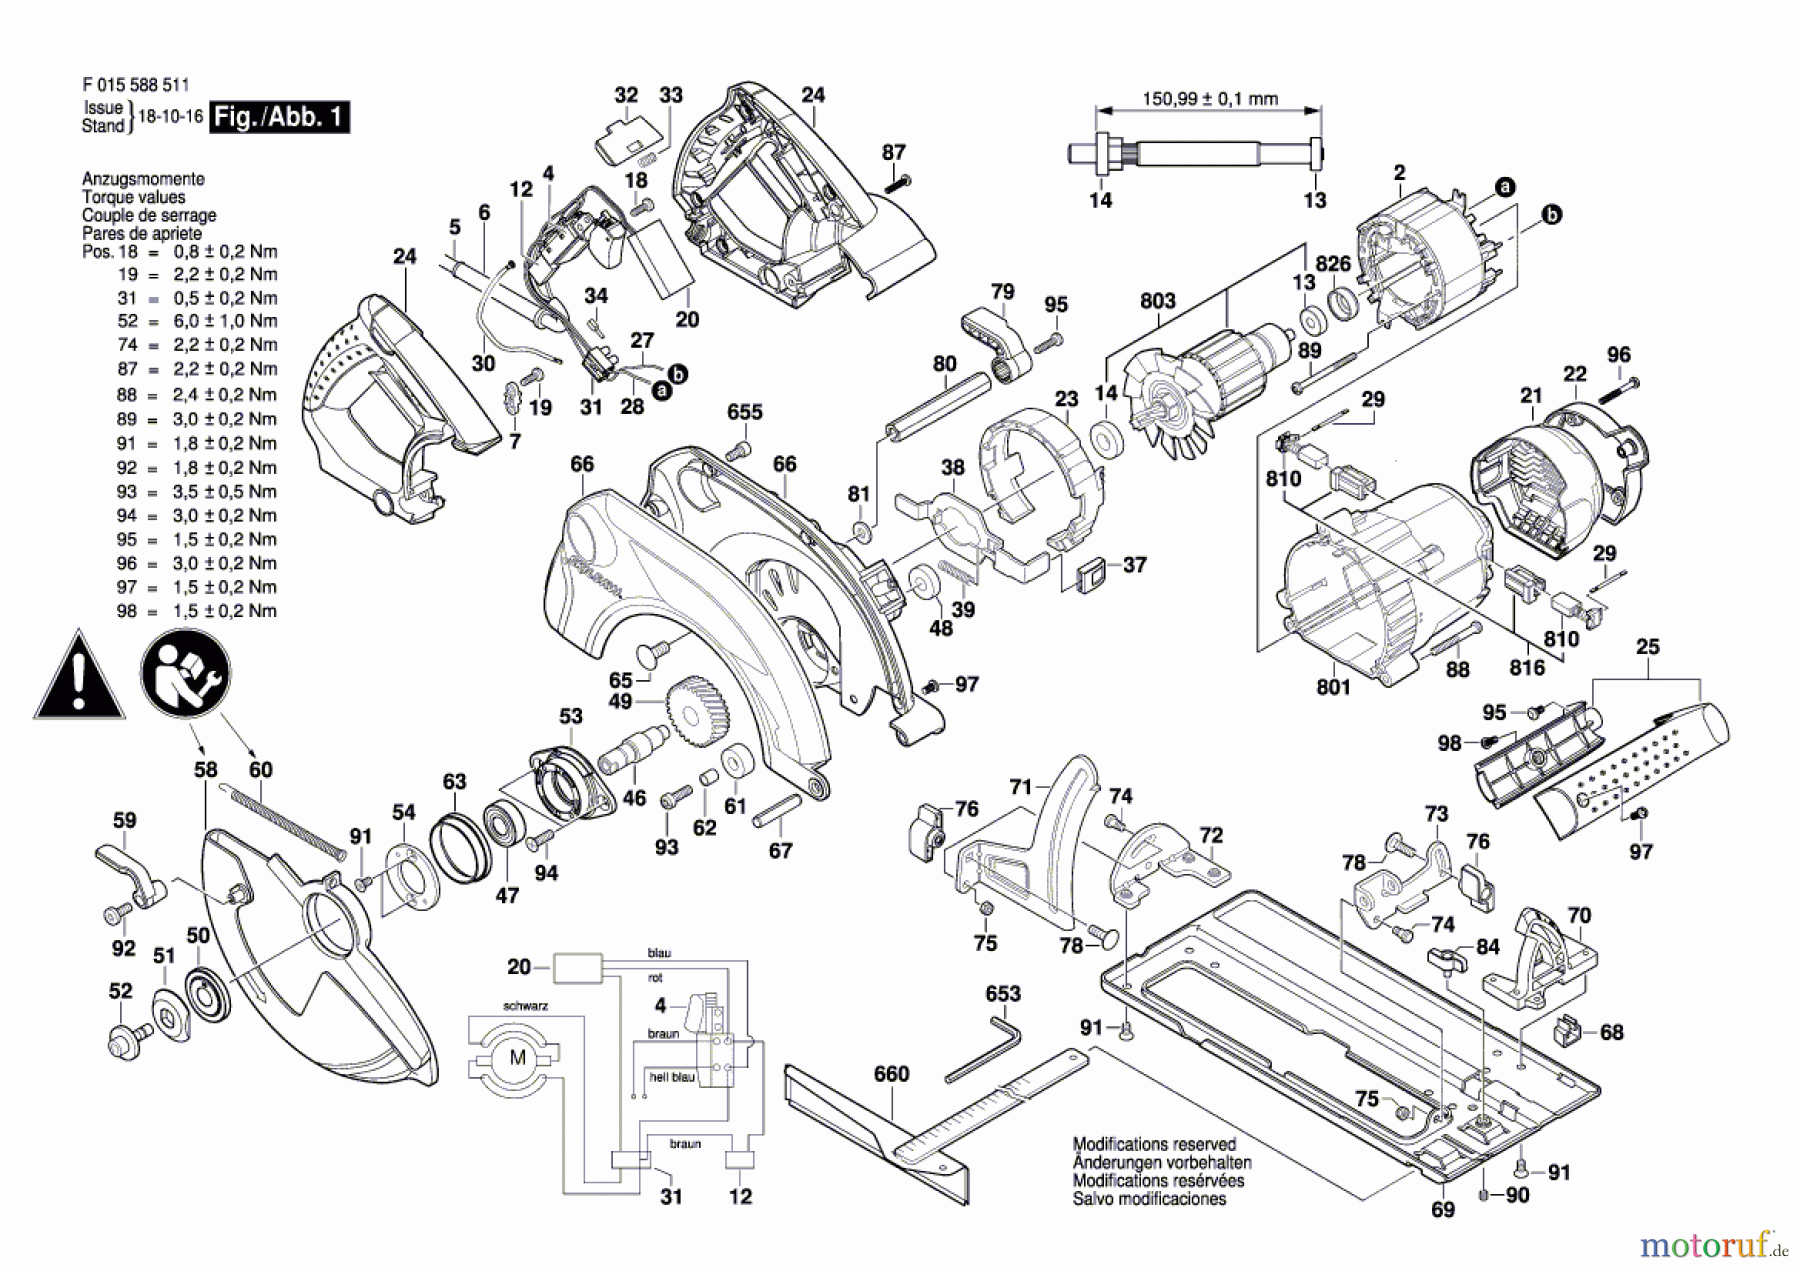  Bosch Werkzeug Handkreissäge 5885 Seite 1